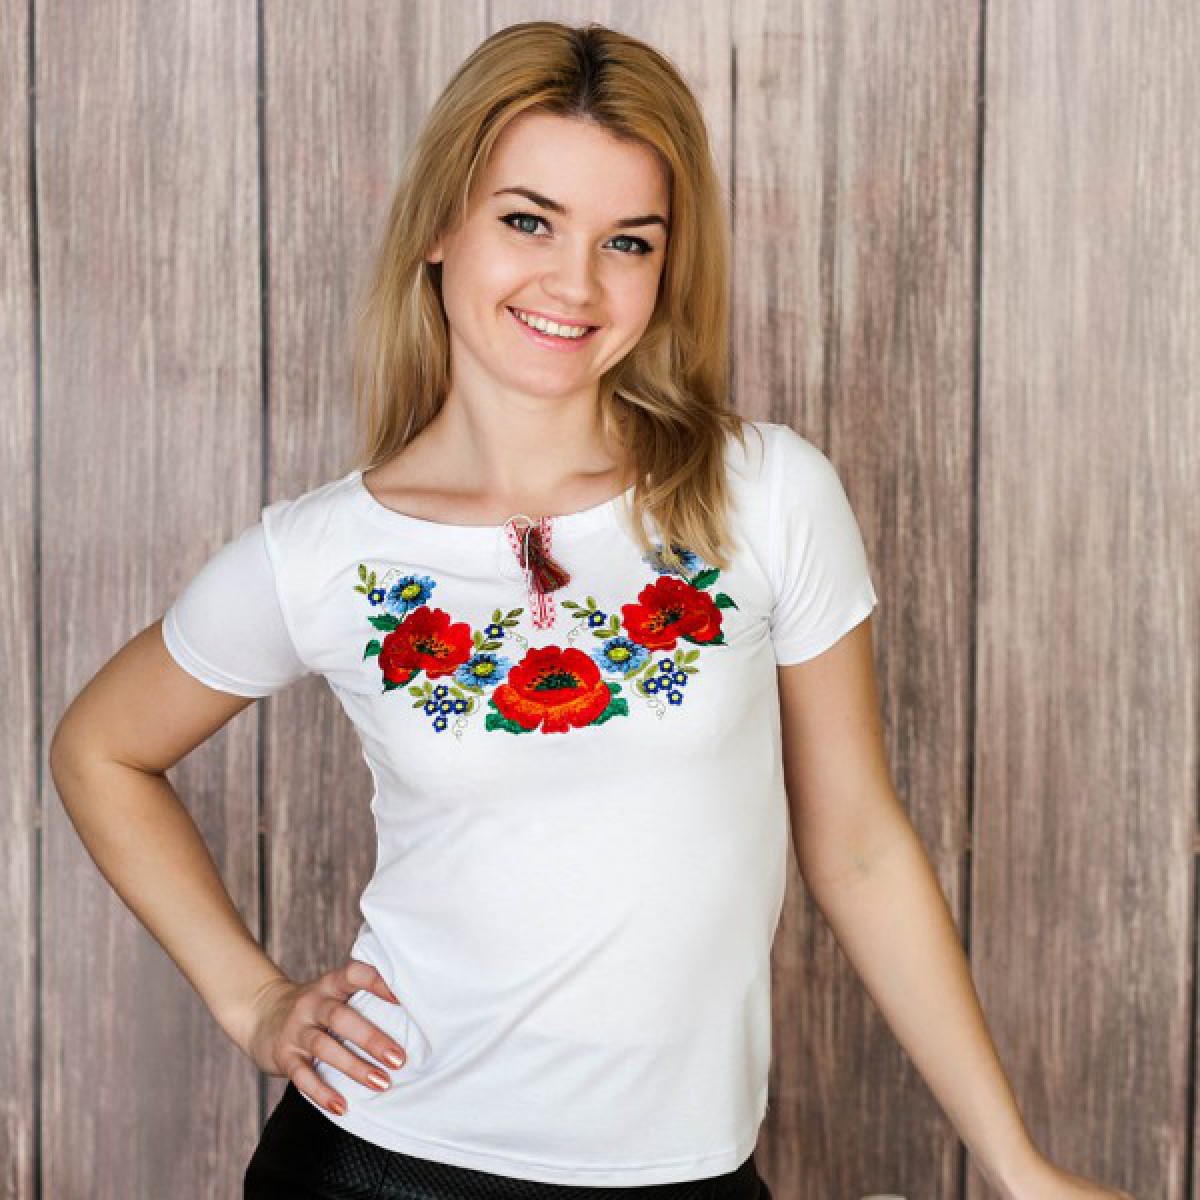 Embroidered shirt, embroidered t-shirt, ukrainian t-shirt, ukrainian ...